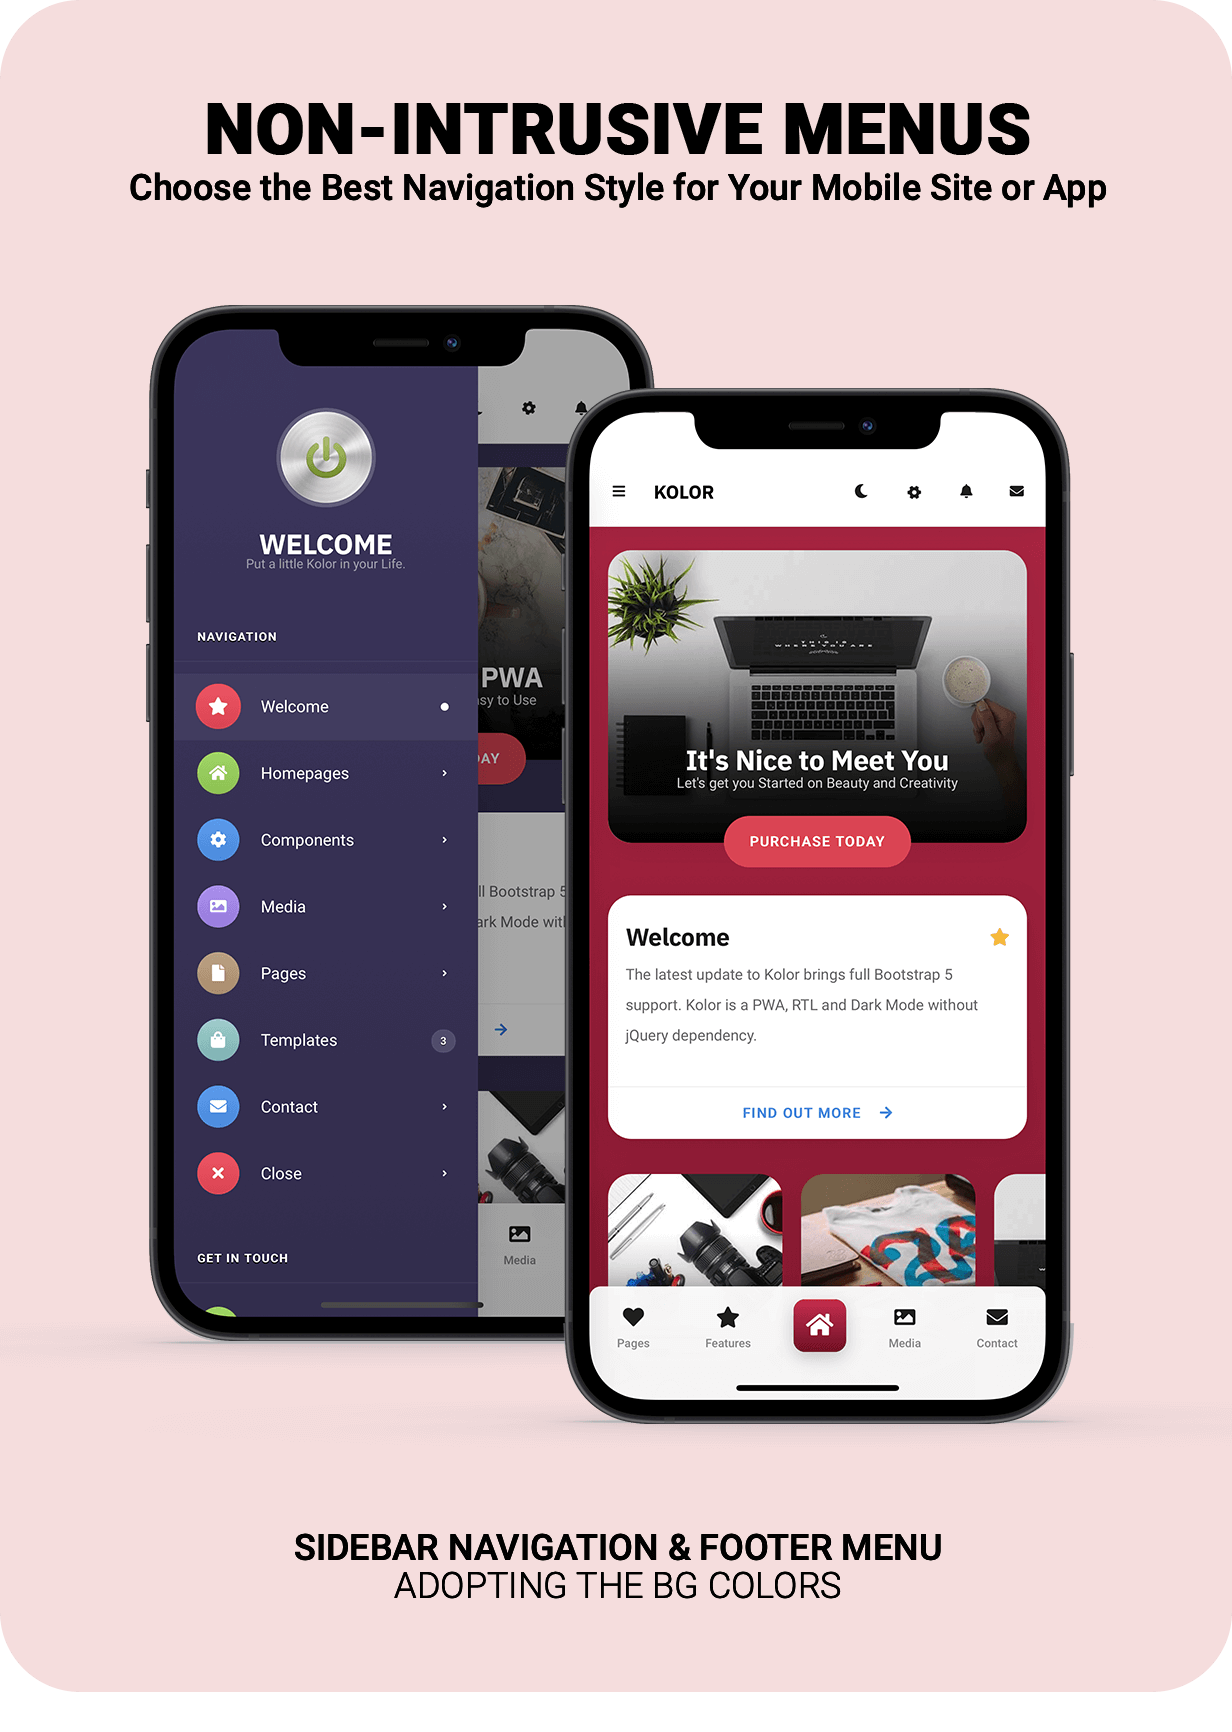 Kolor | PhoneGap & Cordova Mobile App - 11